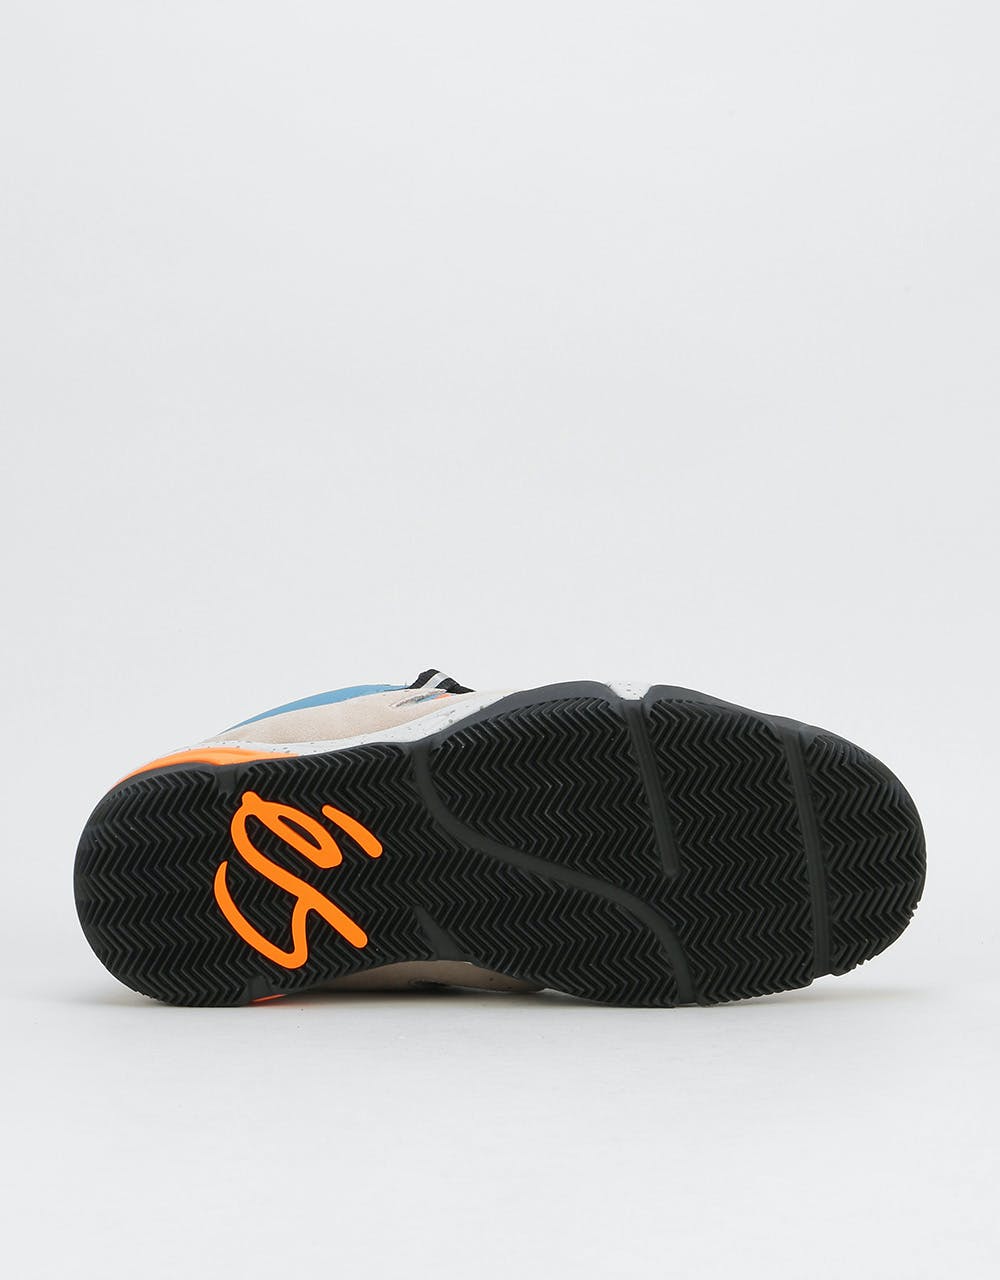 éS Symbol Skate Shoes - Tan/Blue